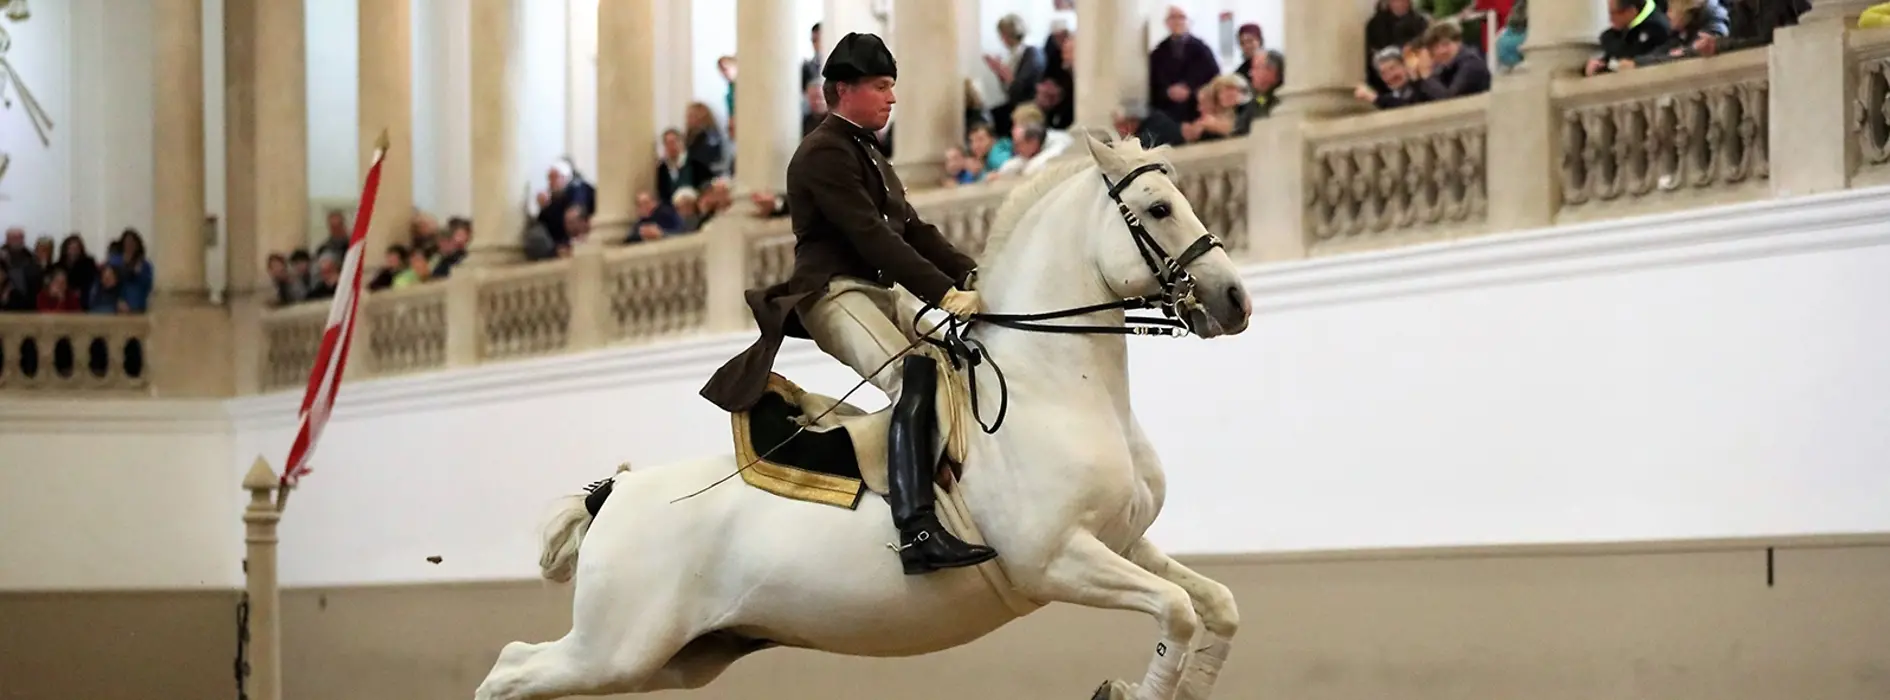 Испанская школа верховой езды, лошадь липицианской породы, всадник в прыжке